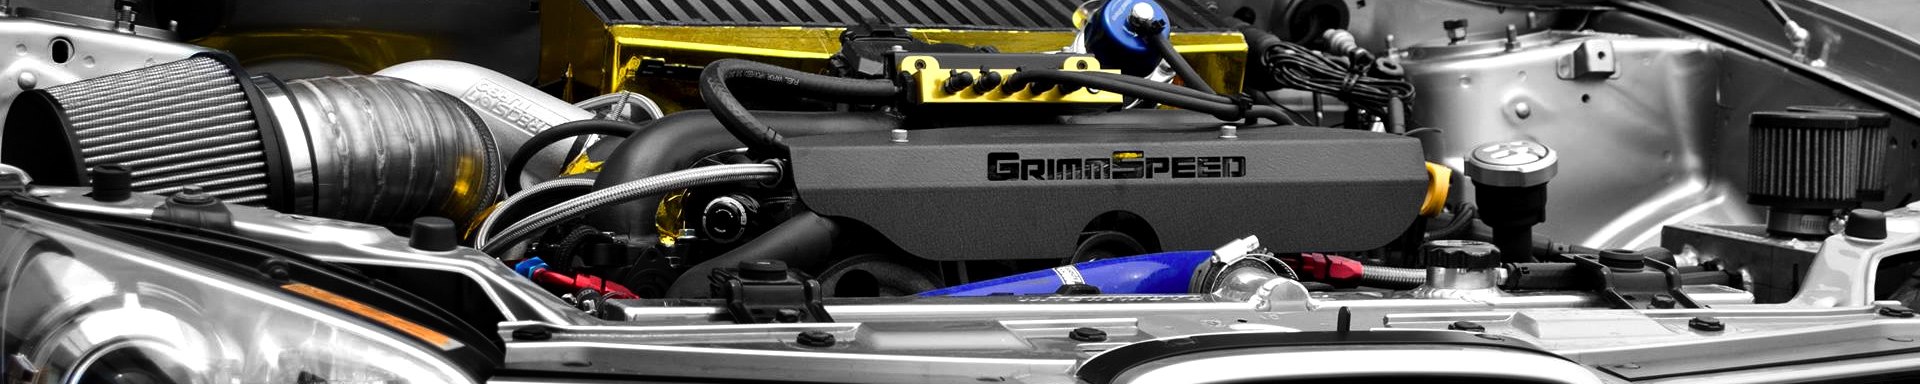 GrimmSpeed Engine